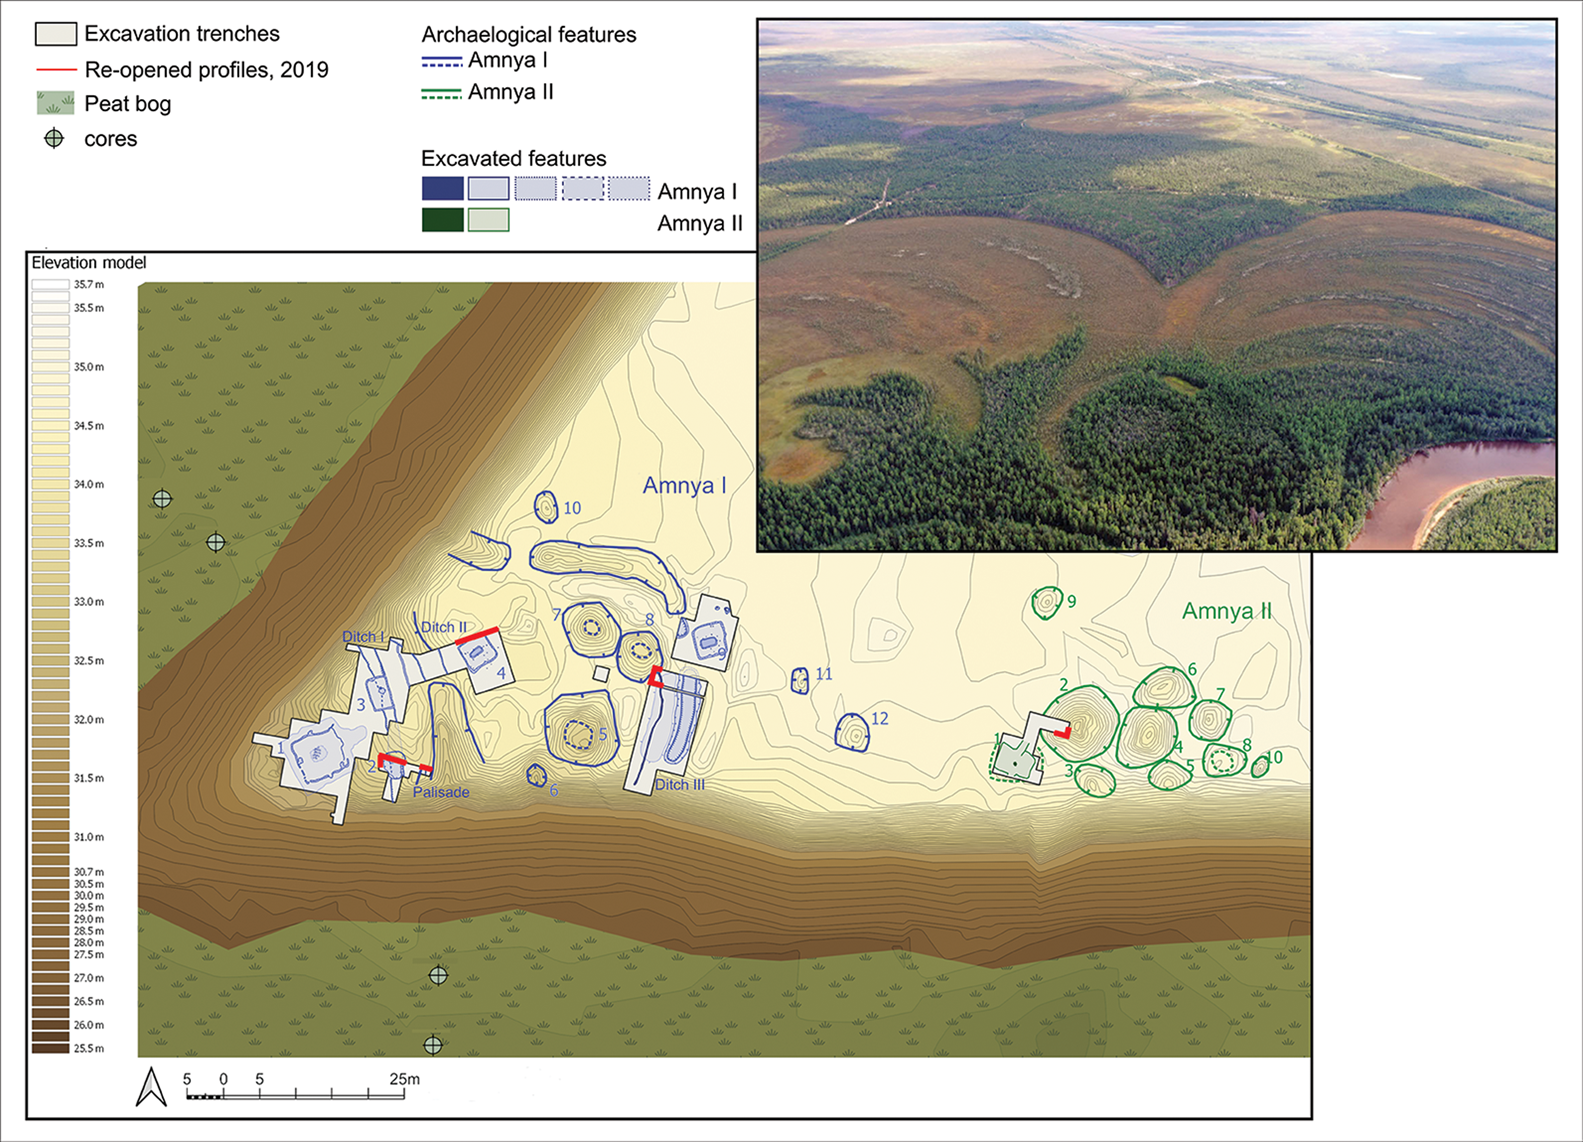 Gore: pogled iz zraka na rijeku Amnya i rt; dolje: opći plan Amnya I i II, koji pokazuje lokaciju iskopa i značajke vidljive u površinskom reljefu (ilustracije N. Golovanov, S. Krubeck & S. Juncker).